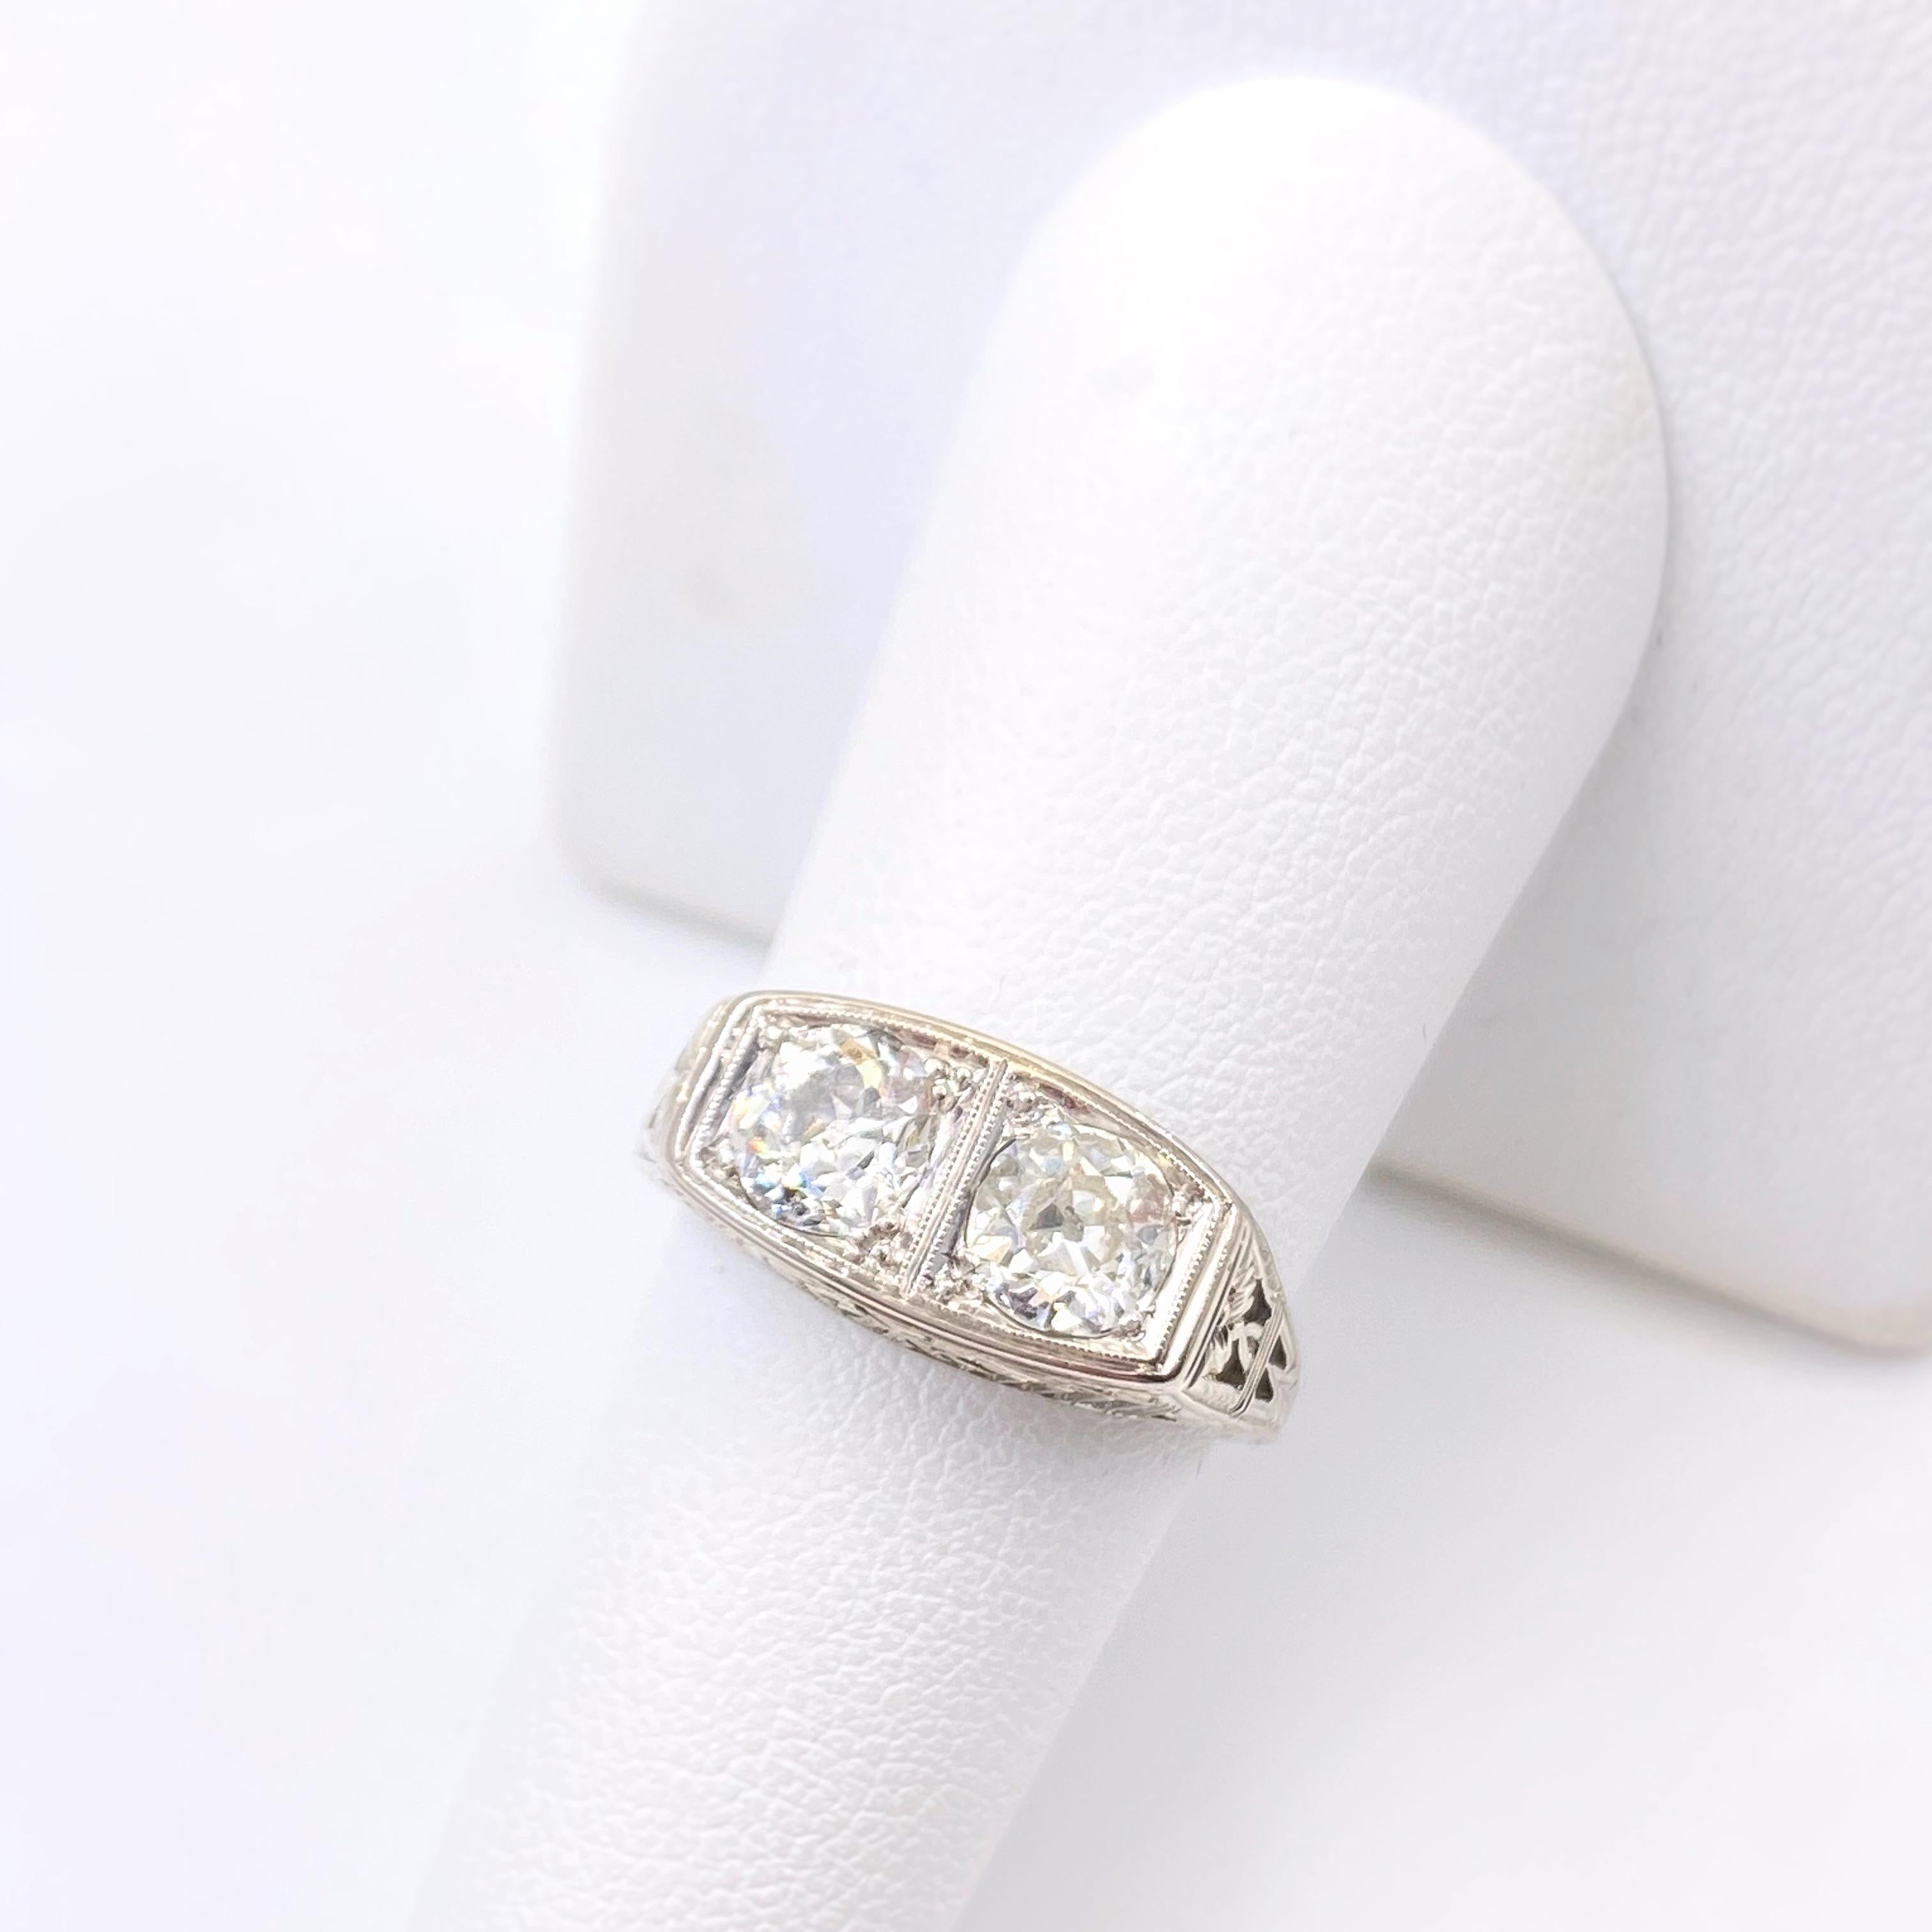 Antique Art Nouveau Diamond Ring 1.25 Carat Old Mine Cut 18 Karat White Gold 2